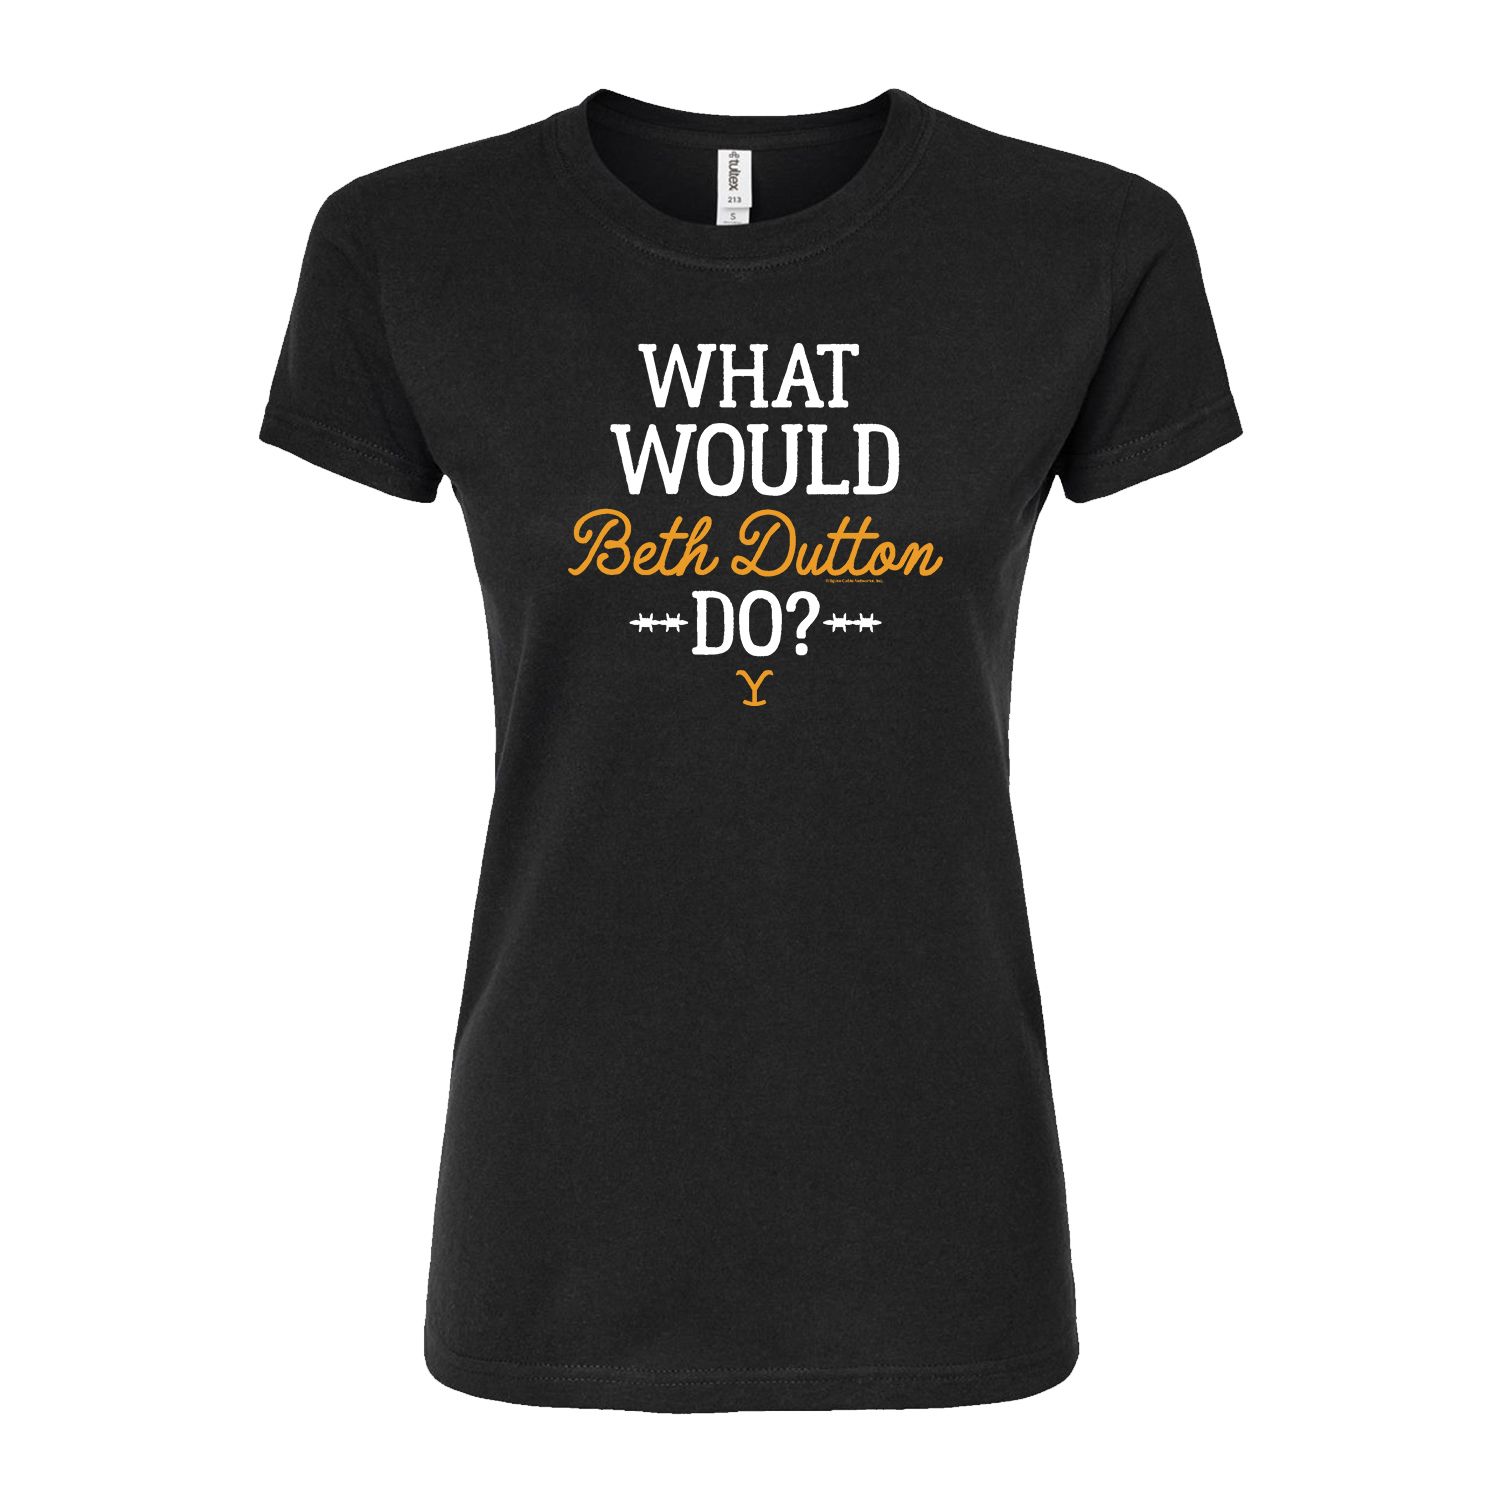 

Облегающая футболка Yellowstone Beth Dutton Do для юниоров Licensed Character, черный